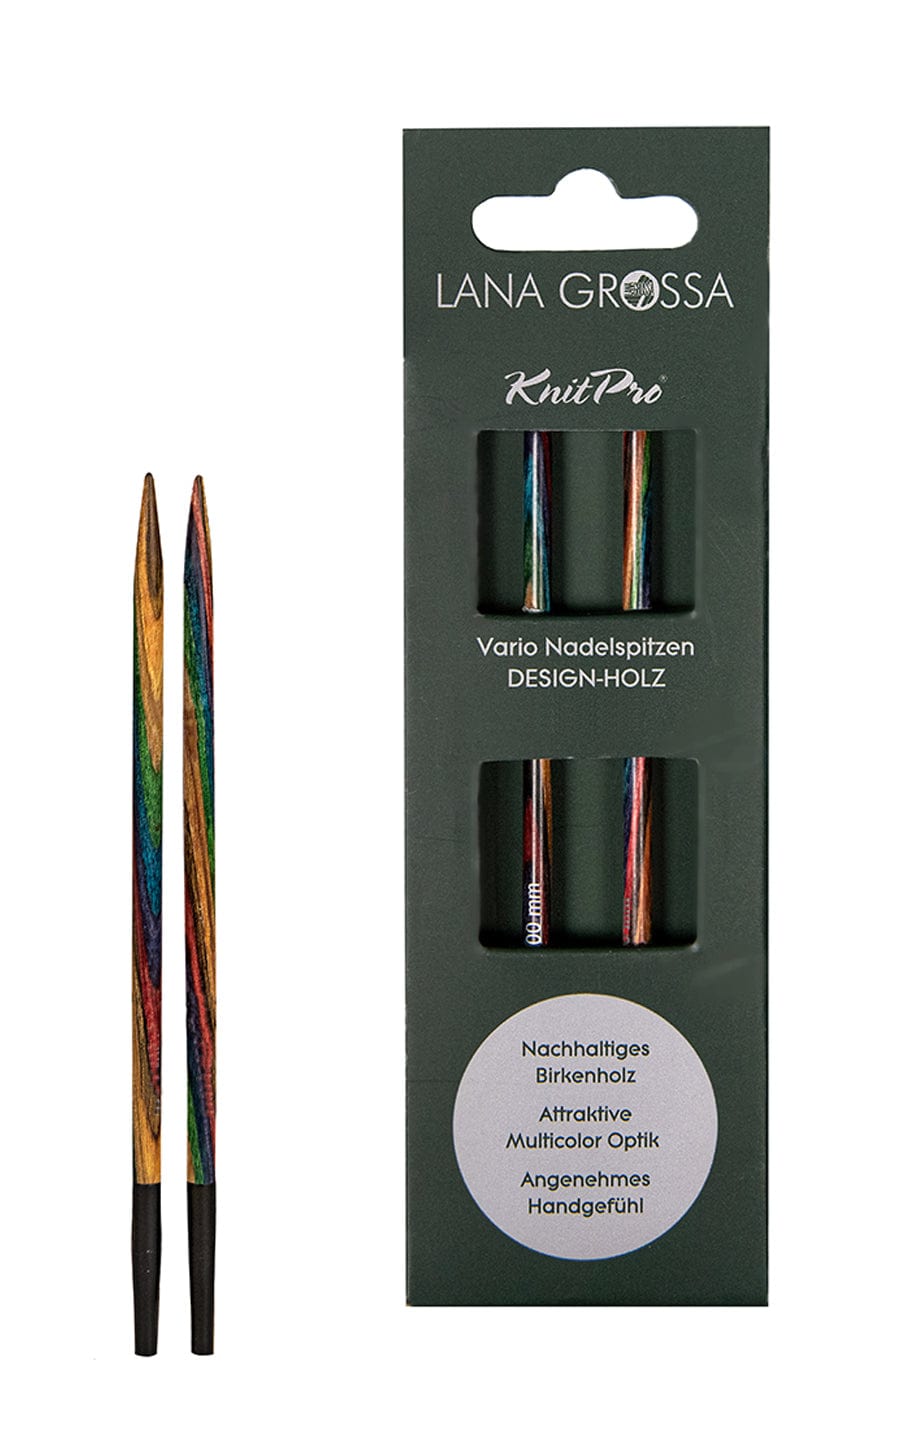 Kurze 4,5 mm Nadelspitze Vario aus Holz - neue Verpackung von LANA GROSSA jetzt online kaufen bei OONIQUE